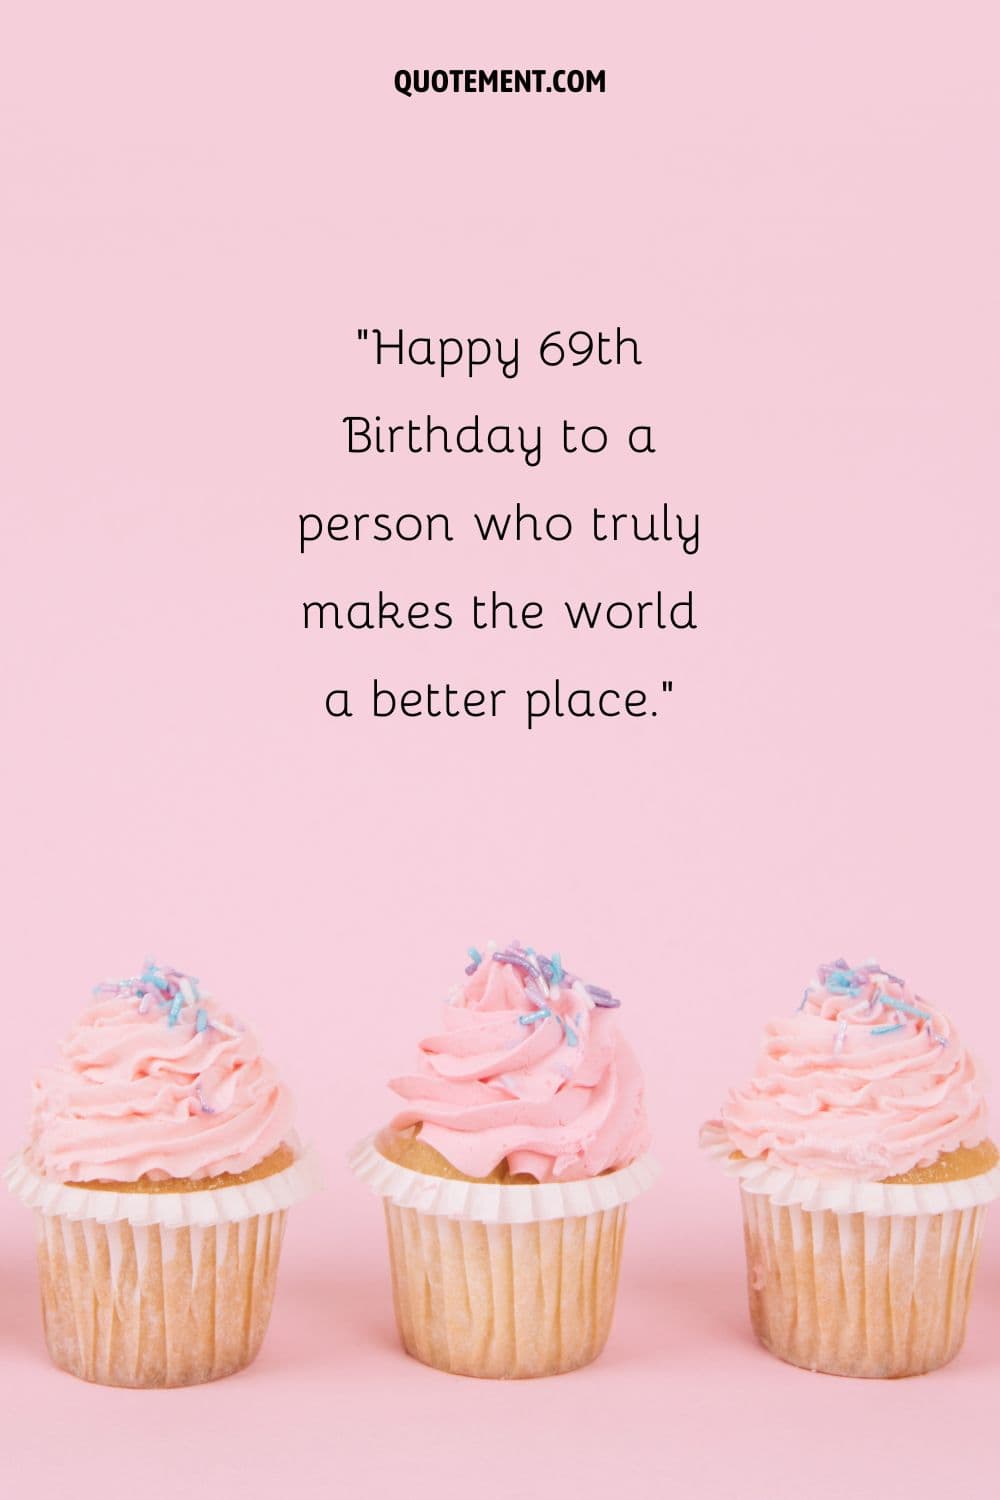 Feliz 69 cumpleaños a una persona que realmente hace del mundo un lugar mejor.